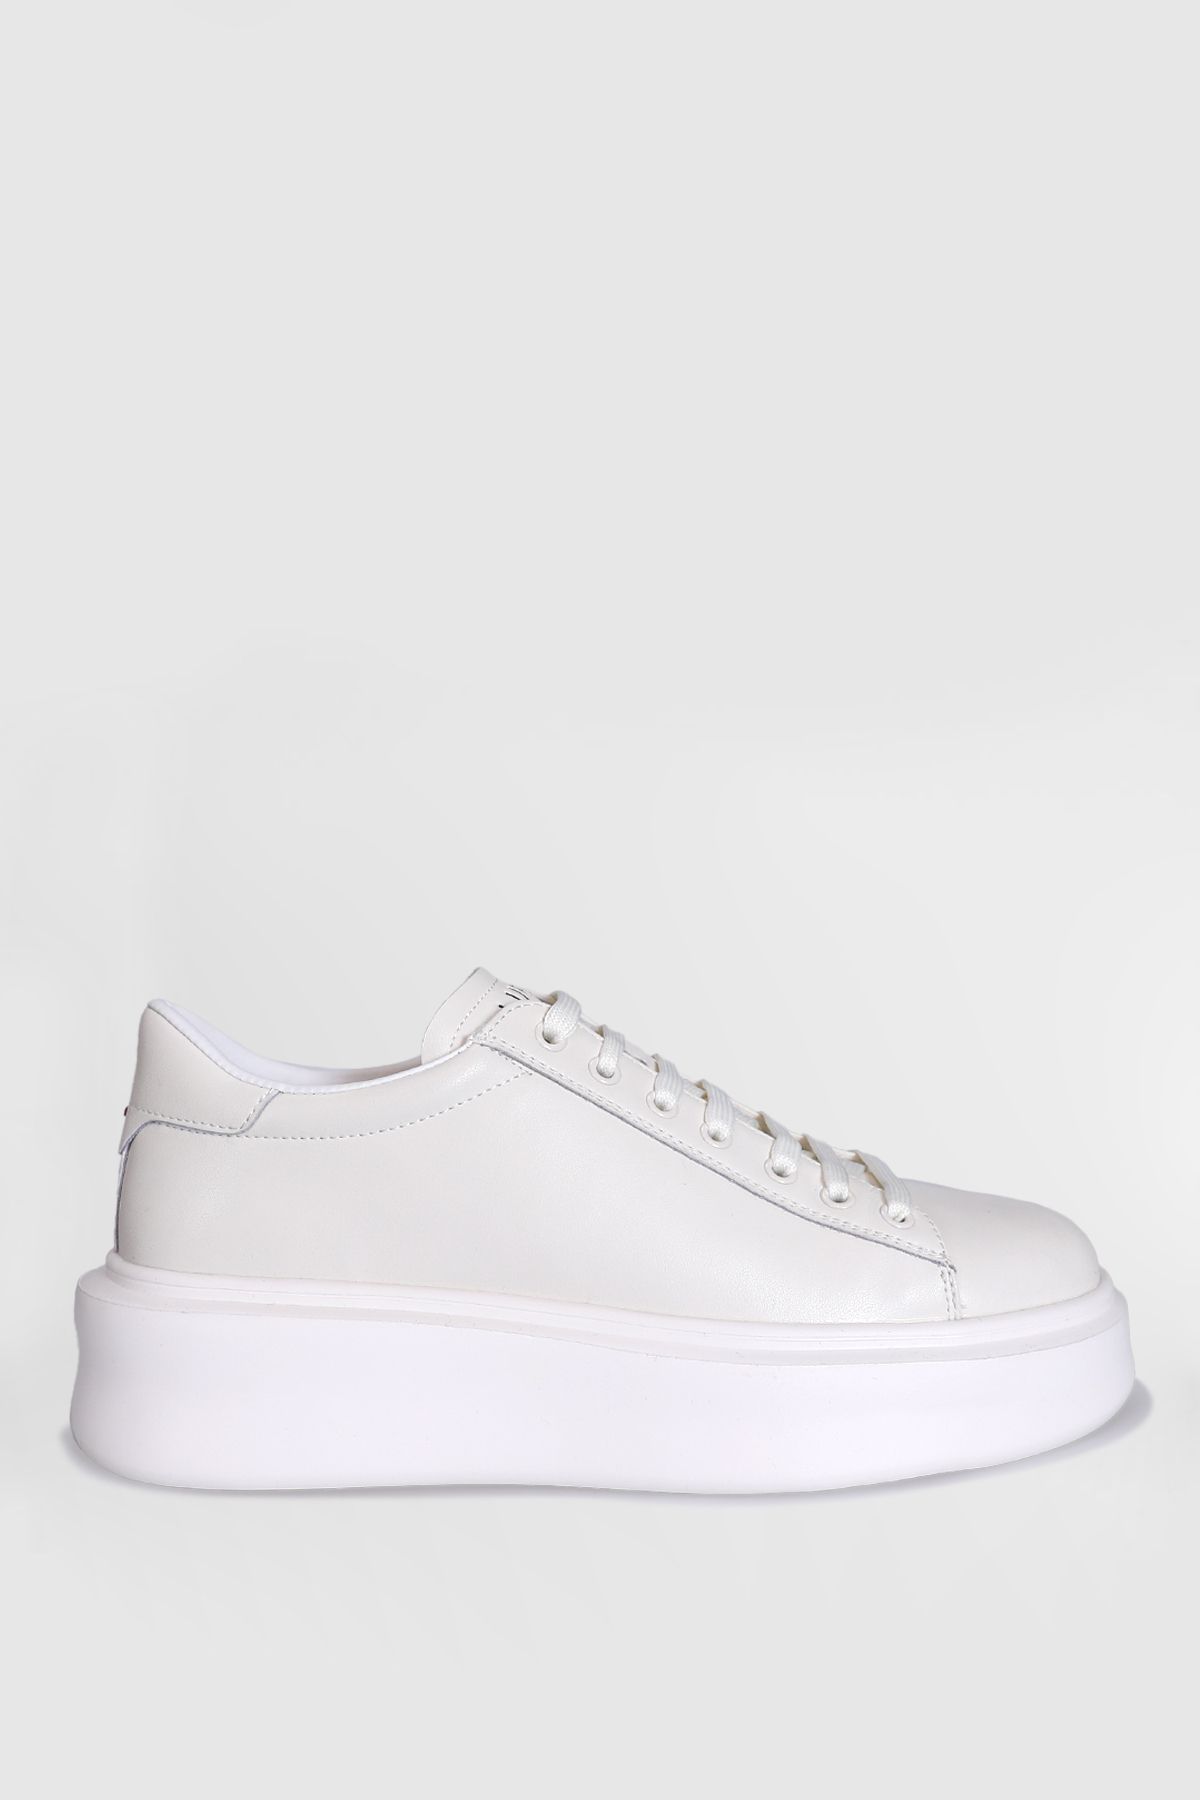 Lufian Gage Erkek Deri Sneaker Ayakkabı Beyaz